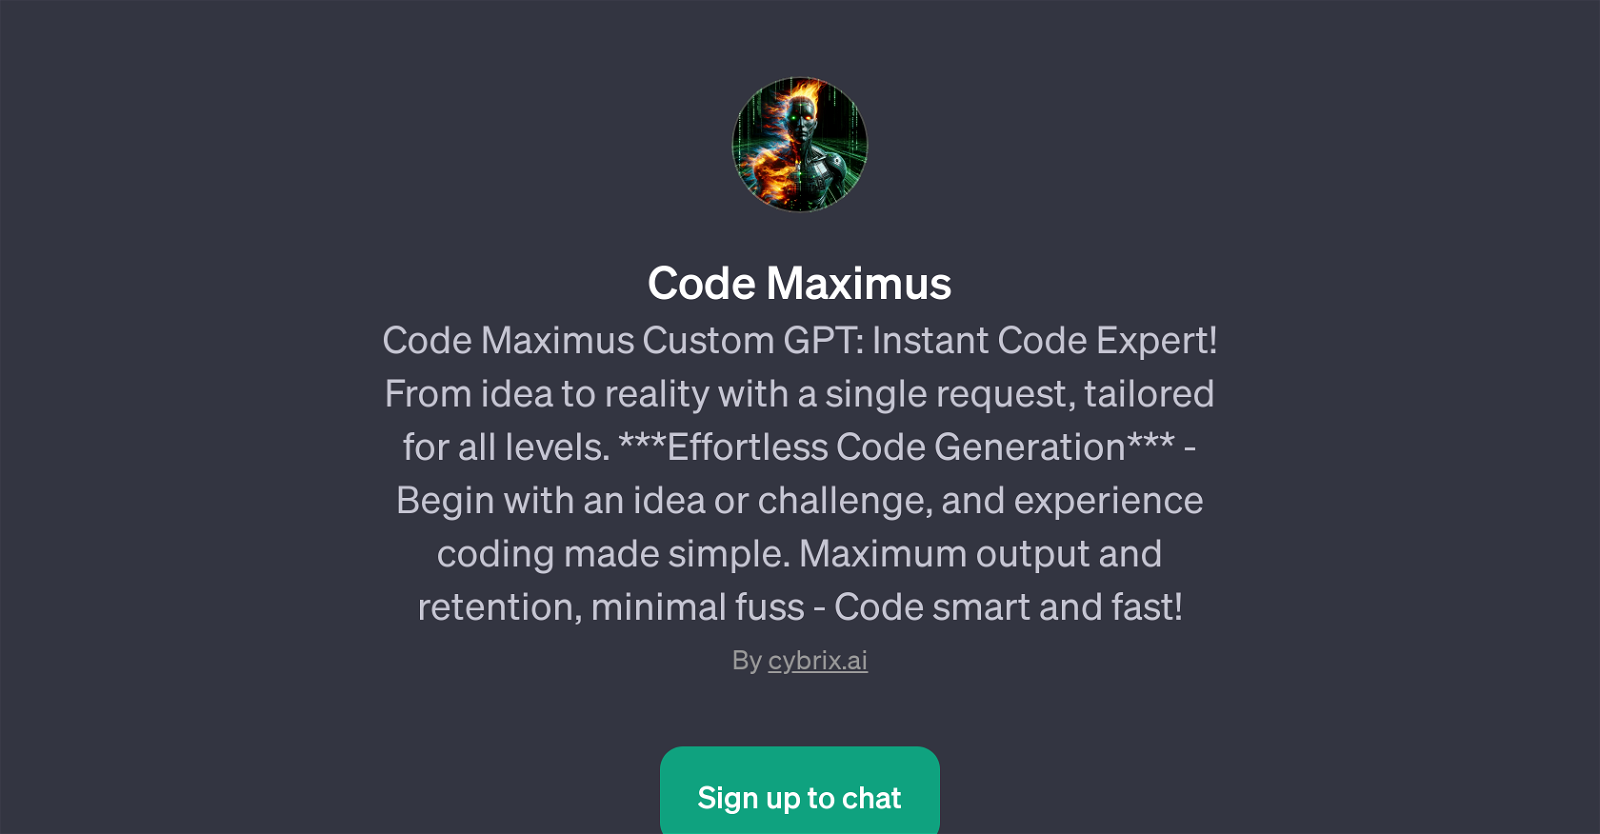 Code Maximus website